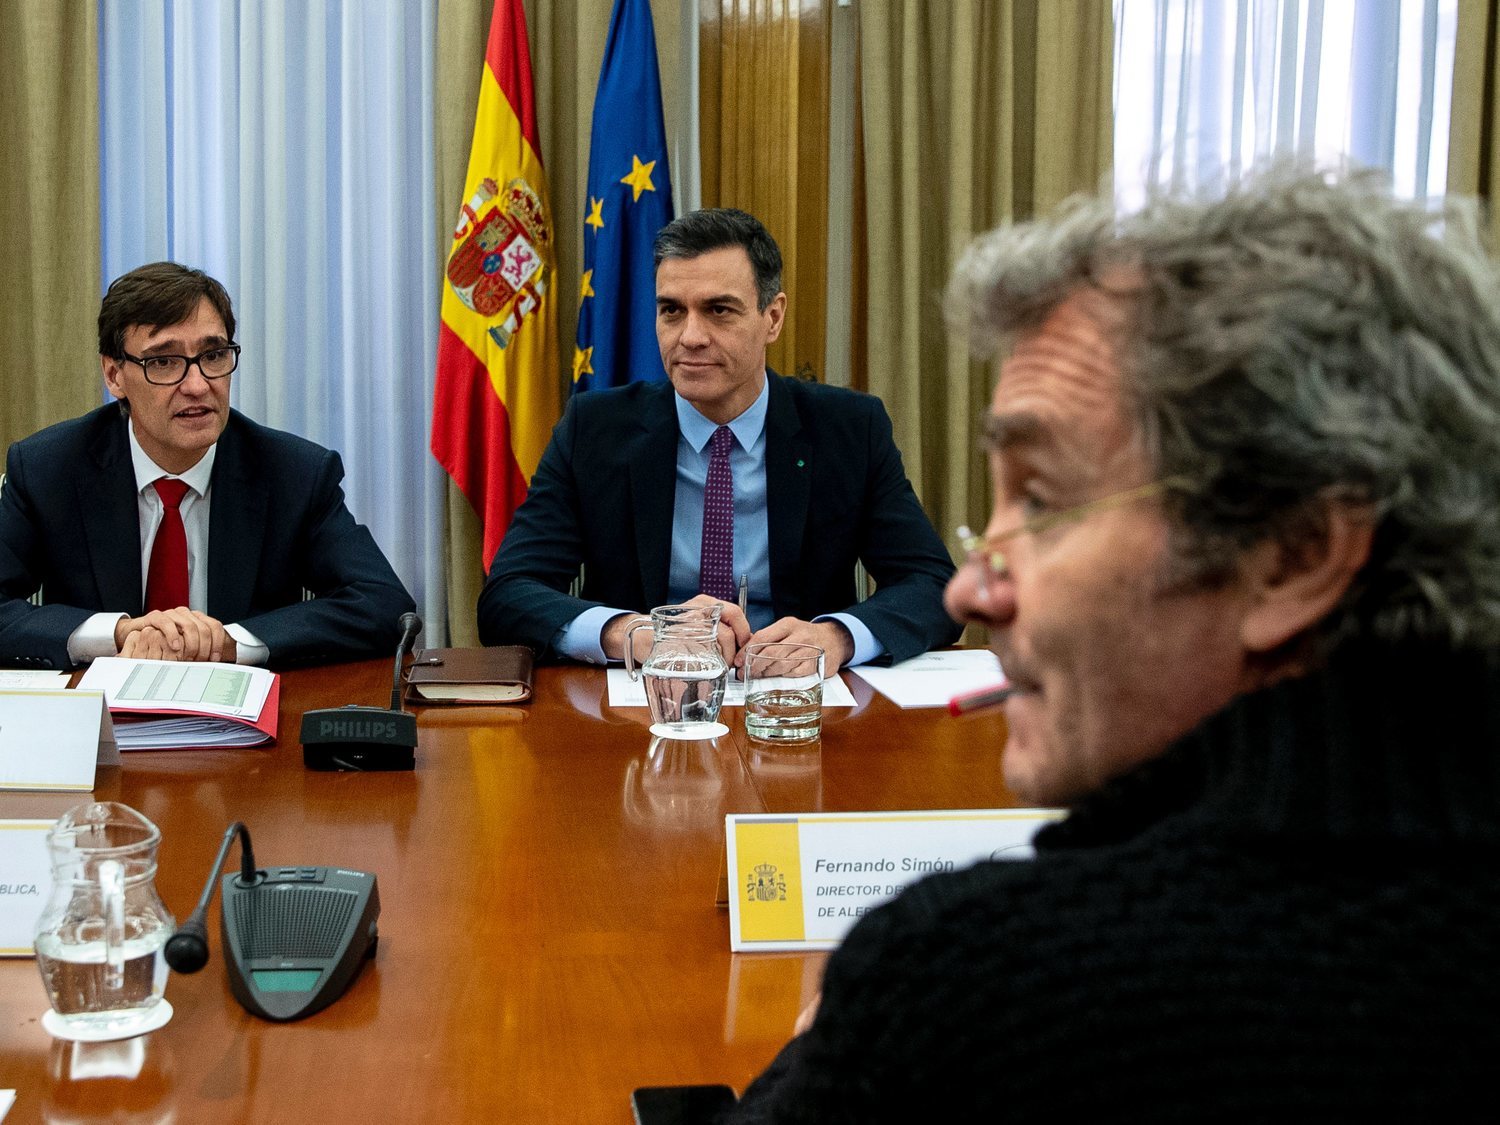 El Gobierno decreta el estado de alarma en España ante la crisis del coronavirus: ¿Qué implica?